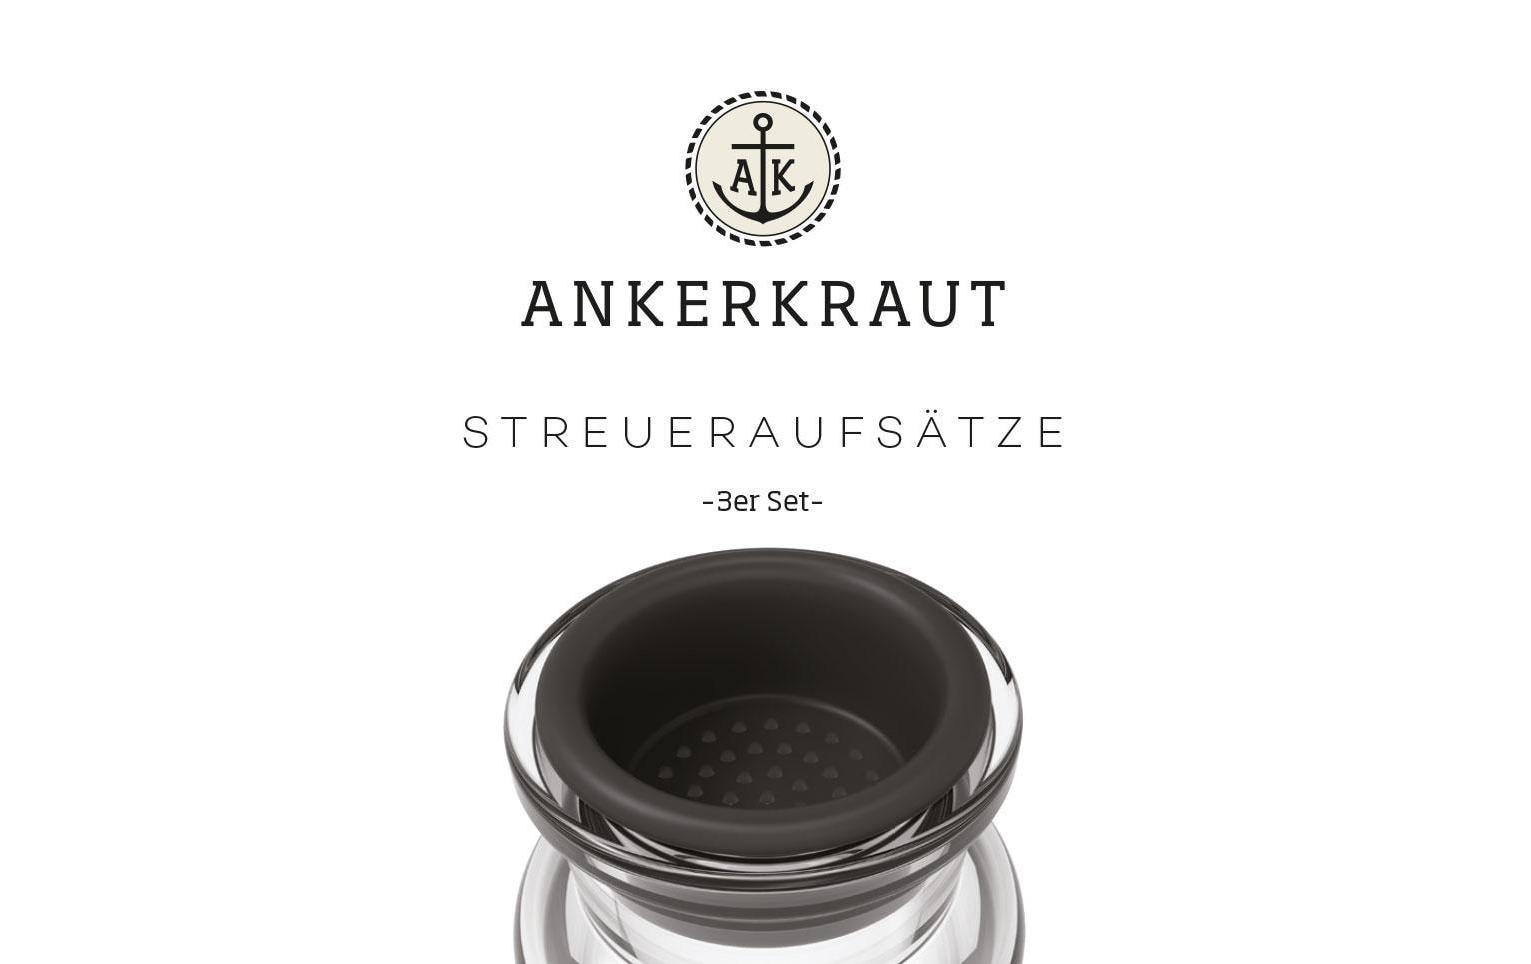 Ankerkraut Korkenglas Streuaufsatz 3er-Set